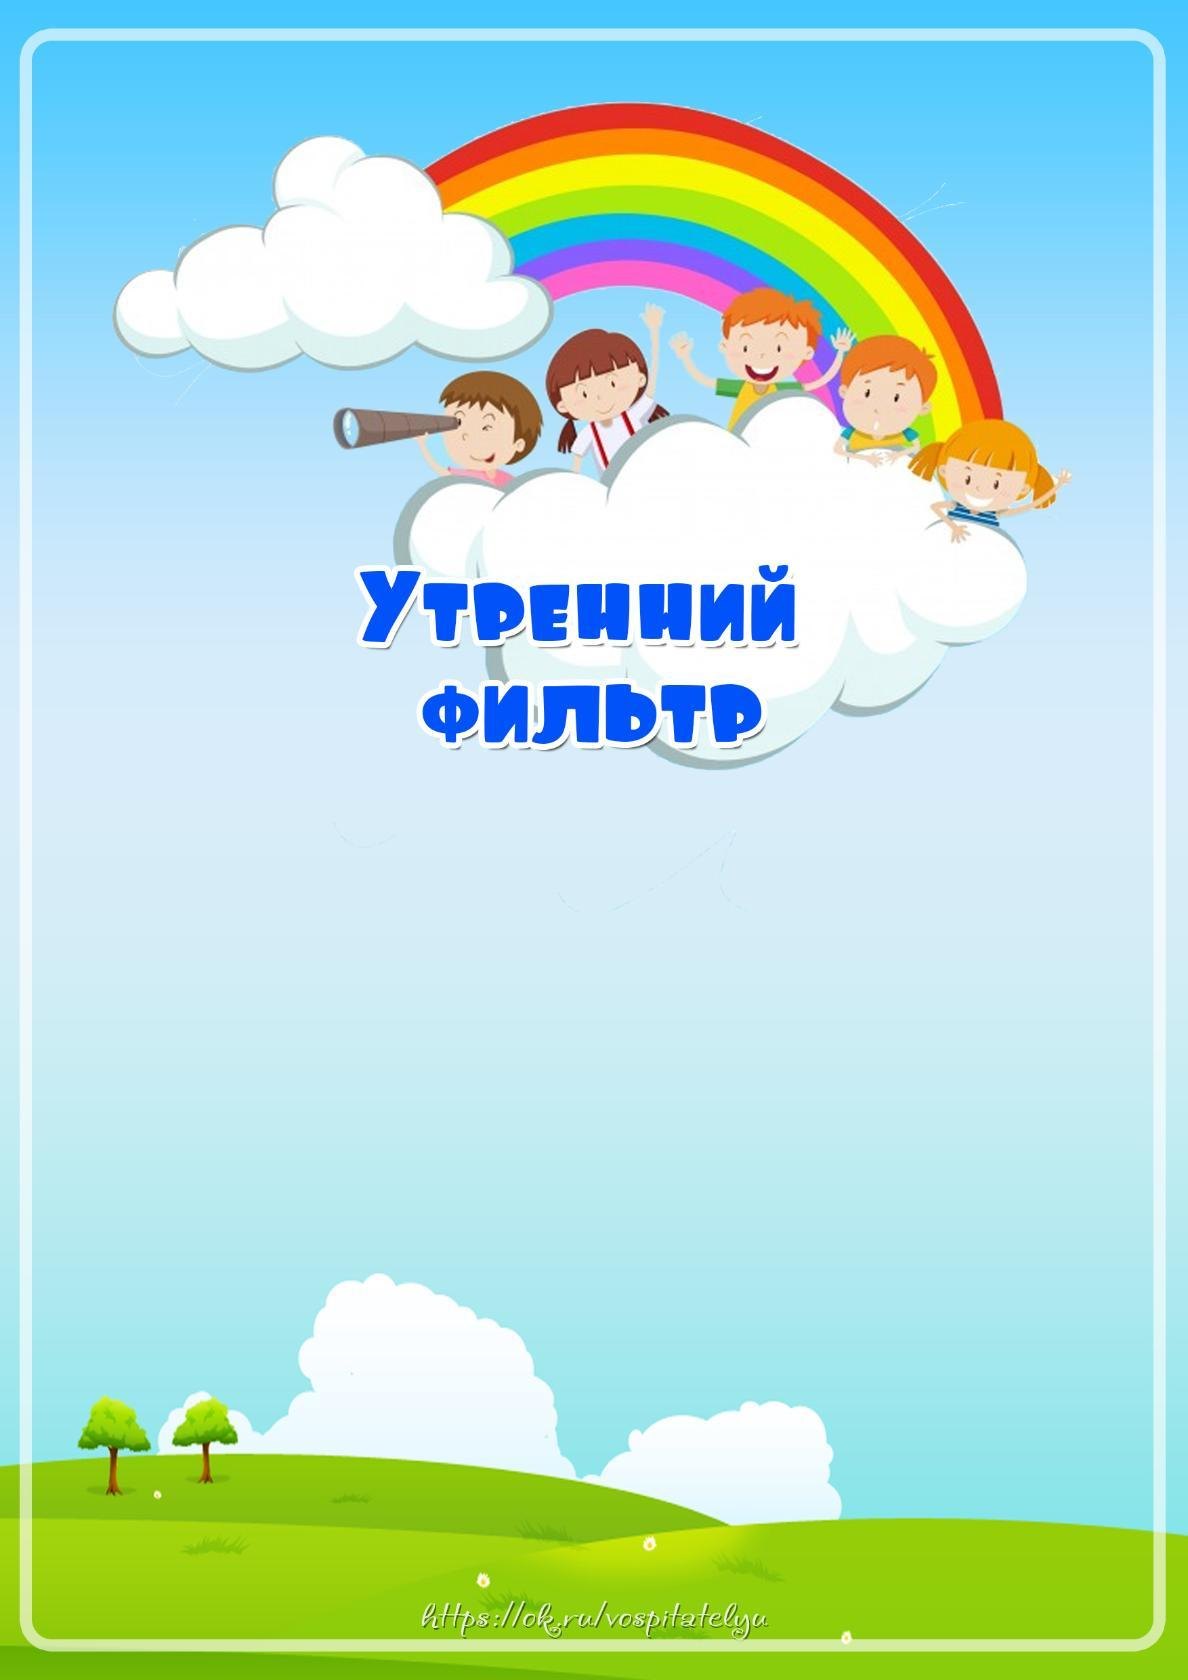 Обложка для группы детского сада